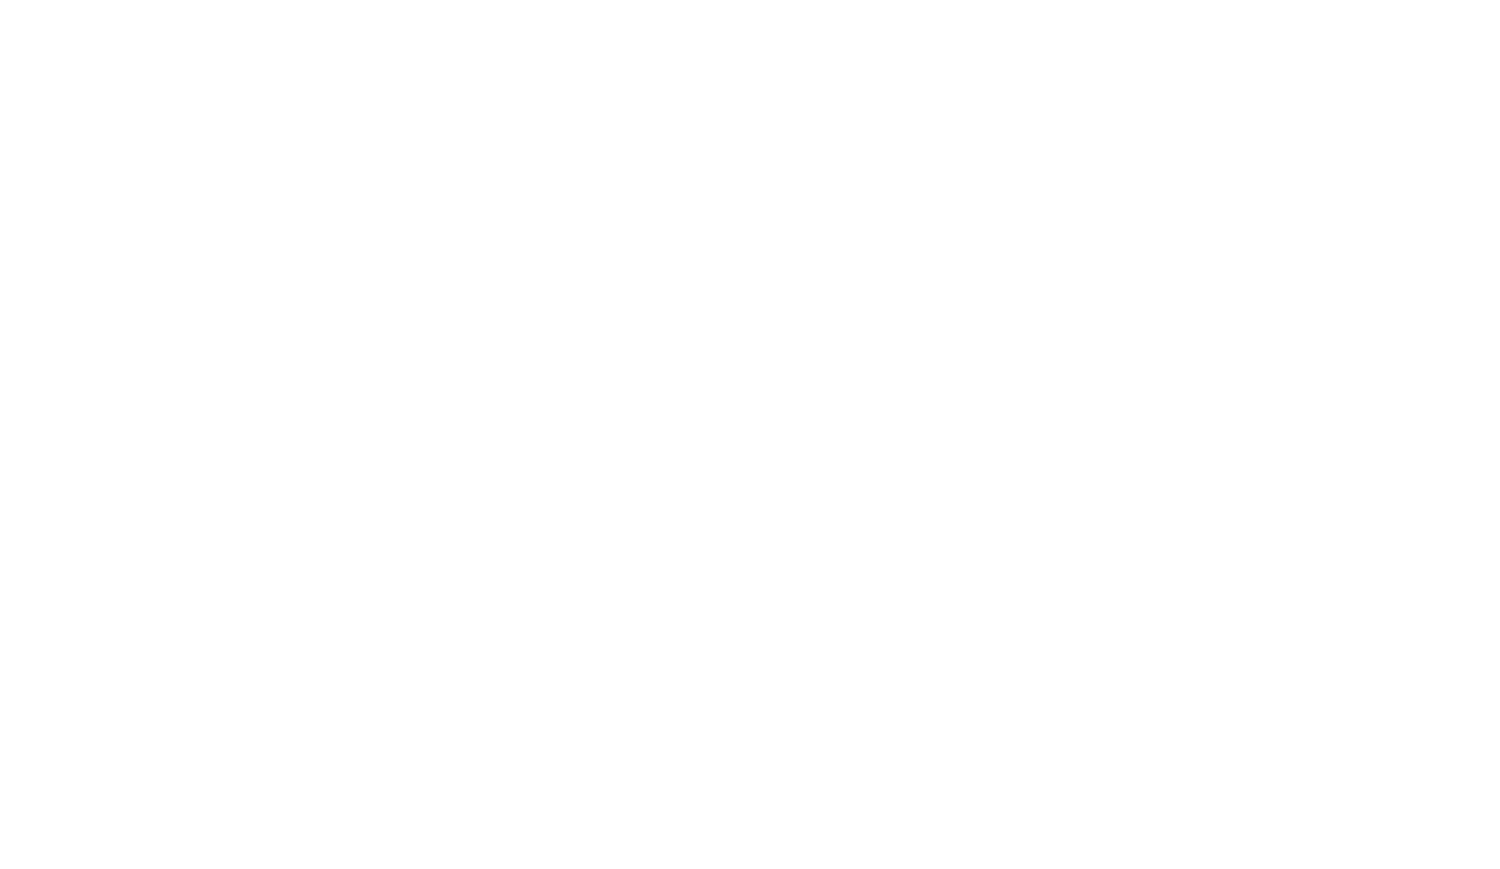 Reinstein Ranch